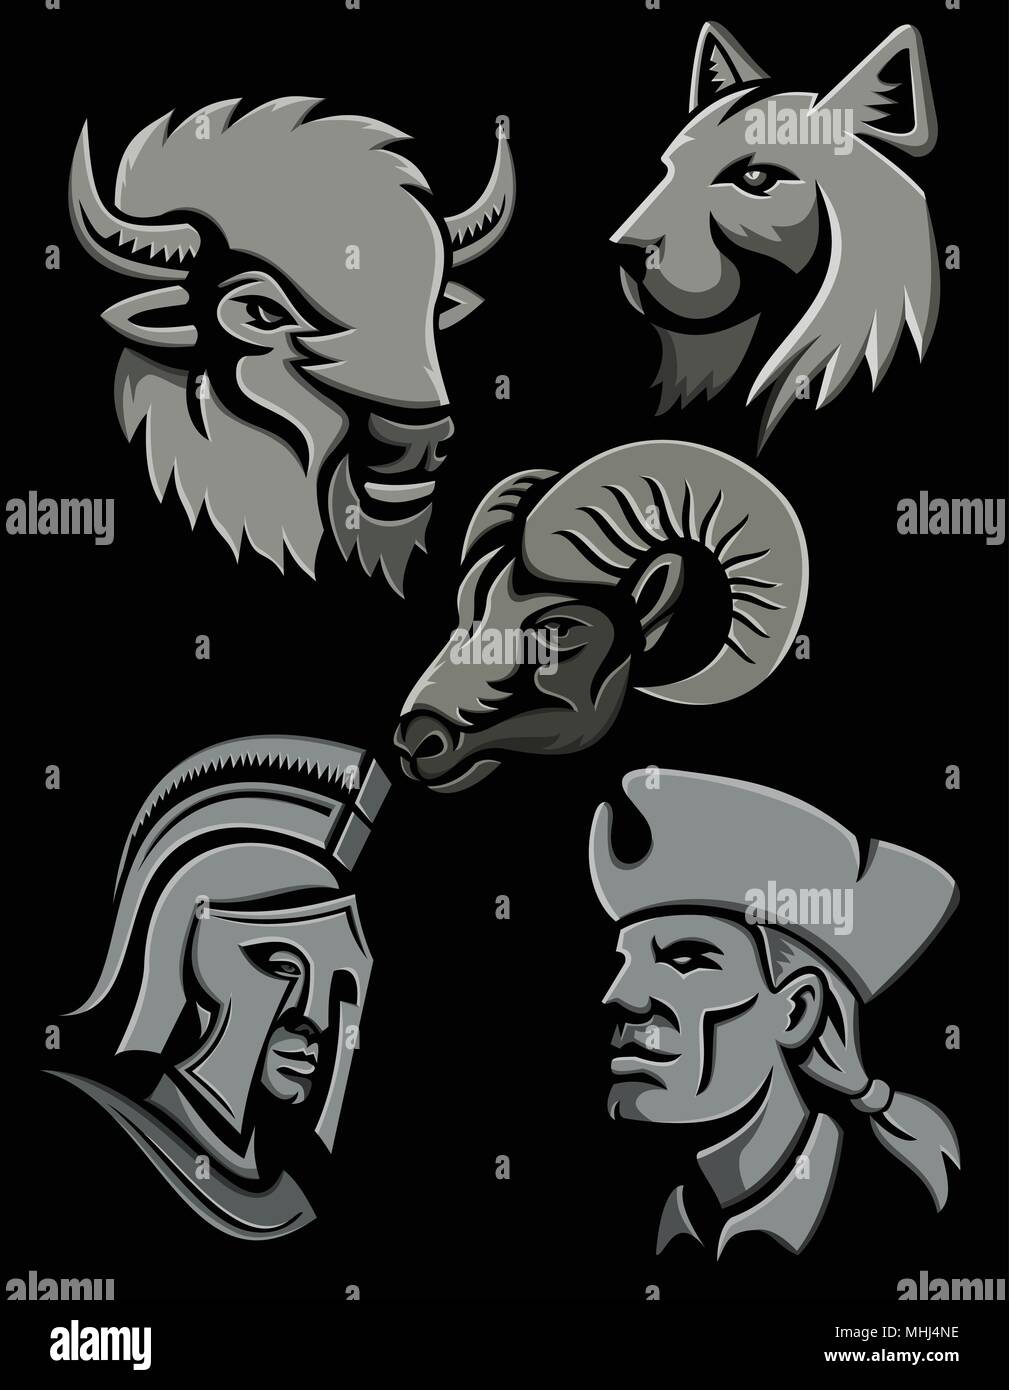 Icono de estilo metálico plano mascota o ilustración de un bisonte o  búfalo, el gato montés o el lince cat, el borrego cimarrón, el guerrero  espartano y un patriota norteamericano jefe Imagen